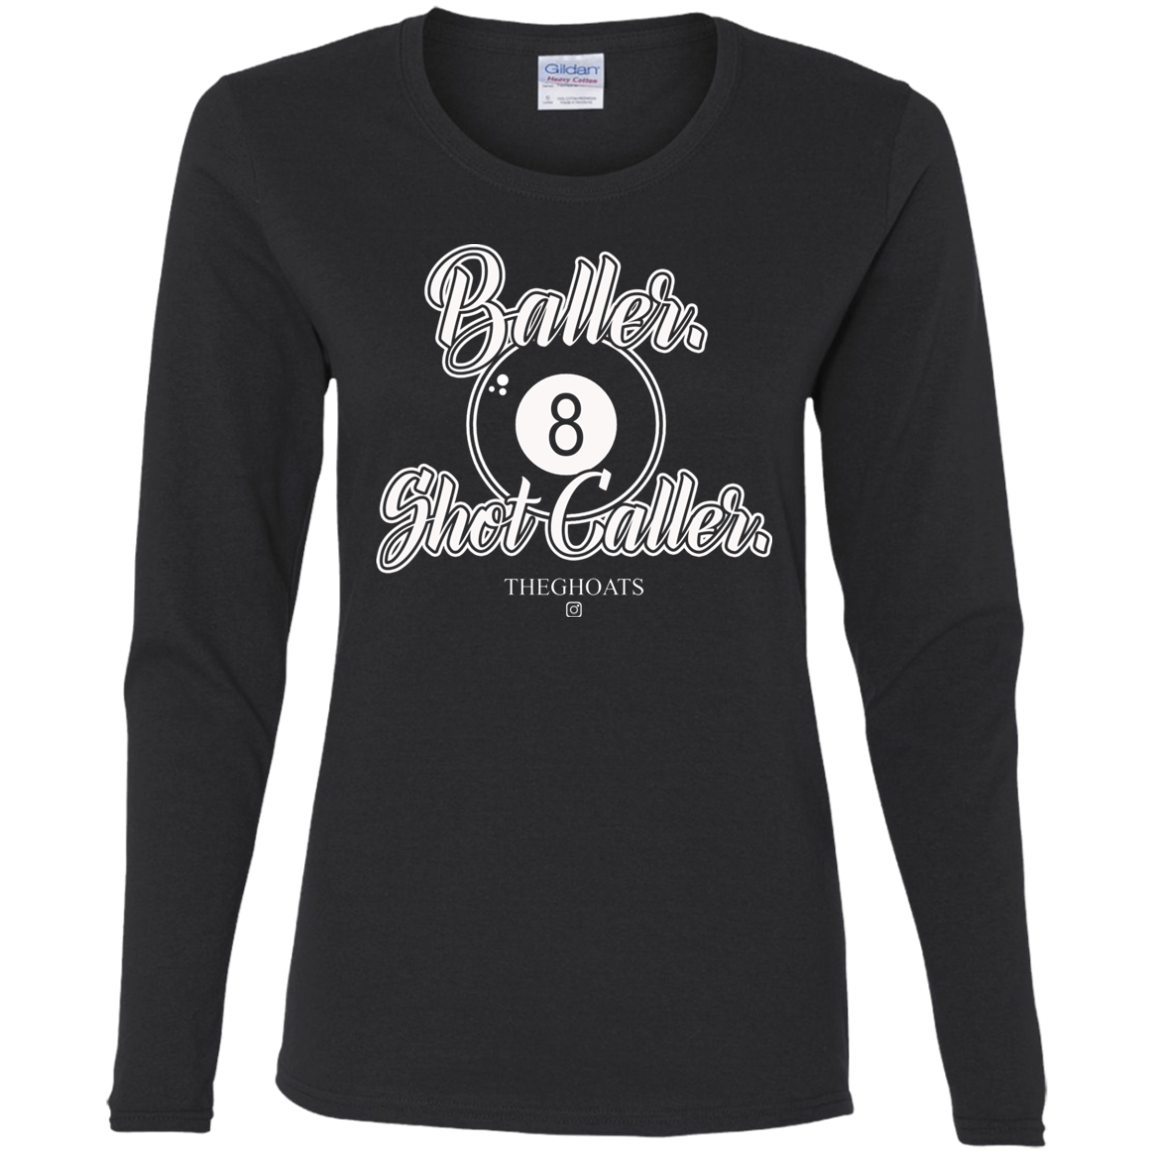 The GHOATS Custom Design #2. Baller. Shot Caller. Ladies' Cotton LS T-Shirt